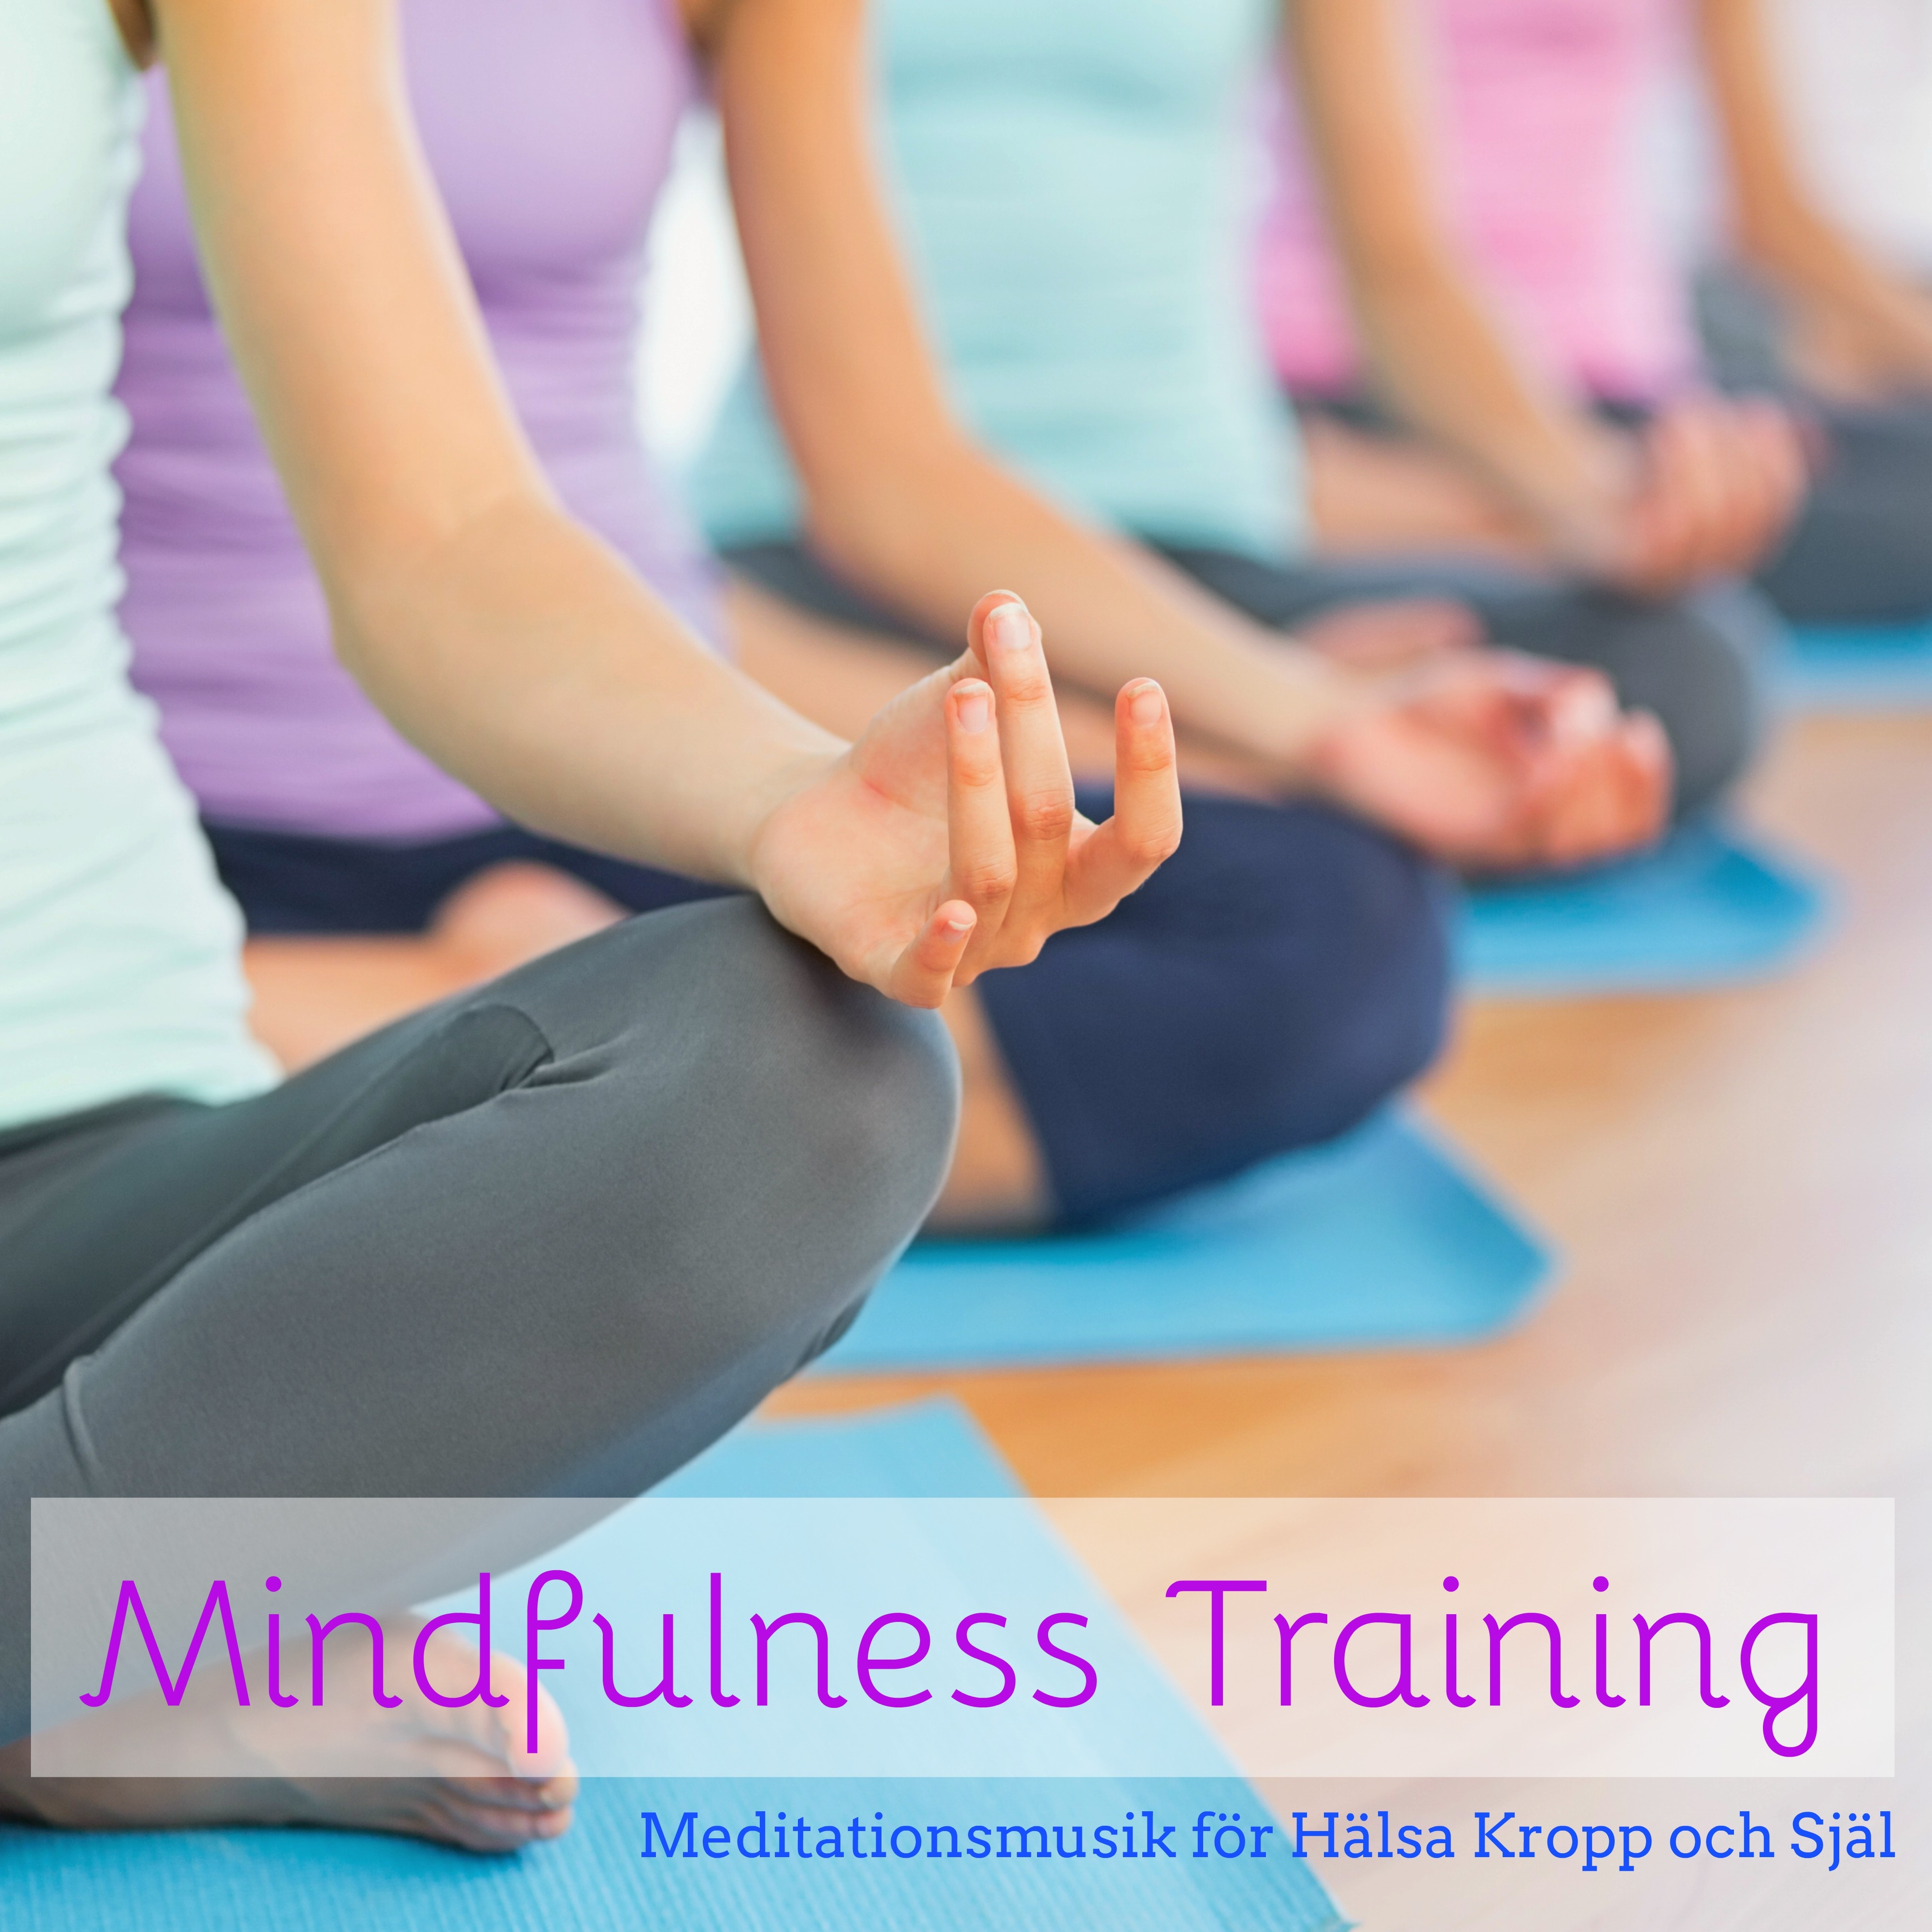 Mindfulness Training - Meditationsmusik för Hälsa Kropp och Själ, Chillout Lounge Musik, Naturens och Instrumental Ljud